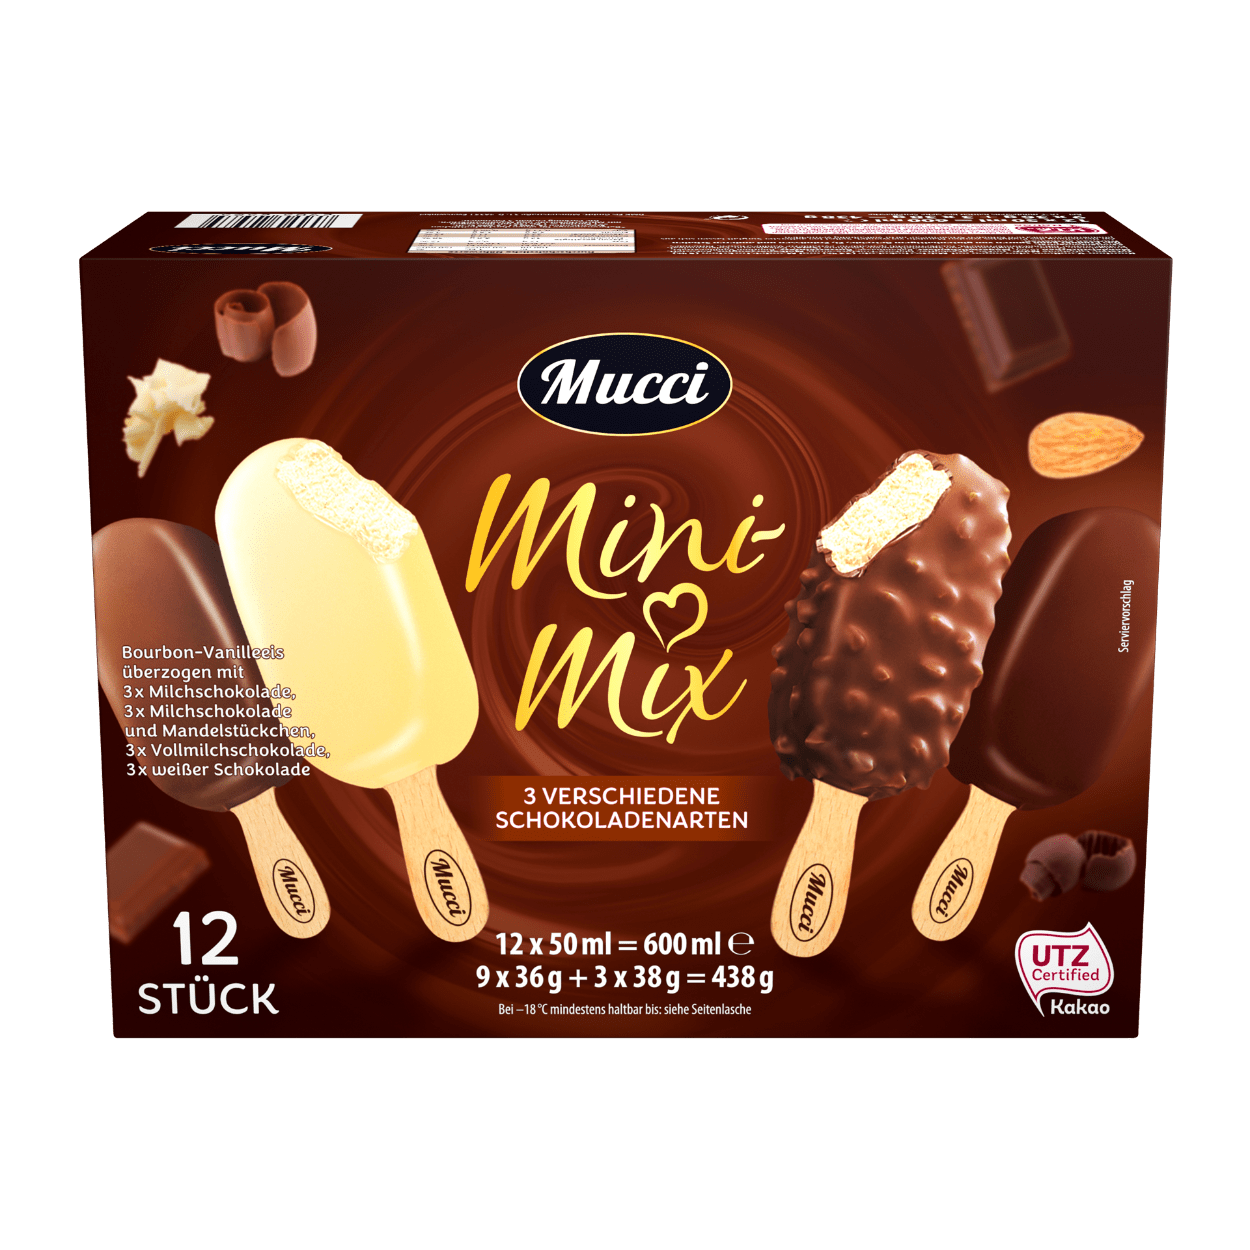 Mini-Mix: Der Hersteller ruft "Mucci - Mini Mix 3 verschiedene Schokoladensorten" mit den Mindesthaltsbarkeitsdaten 3., 4. und 5. April 2021 zurück.